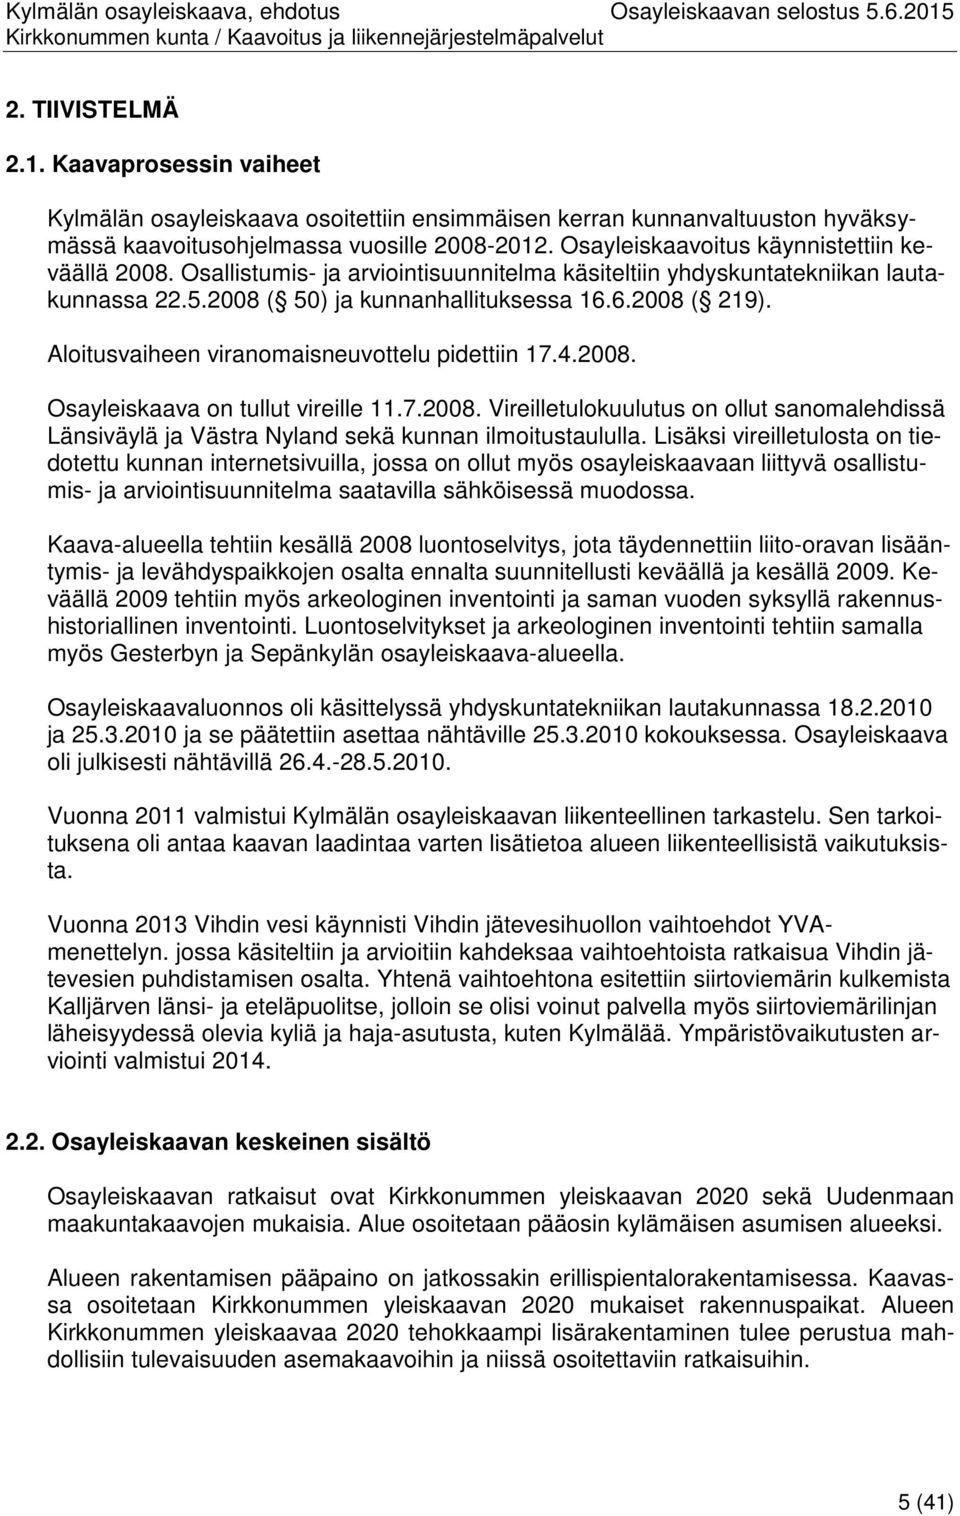 Aloitusvaiheen viranomaisneuvottelu pidettiin 17.4.2008. Osayleiskaava on tullut vireille 11.7.2008. Vireilletulokuulutus on ollut sanomalehdissä Länsiväylä ja Västra Nyland sekä kunnan ilmoitustaululla.